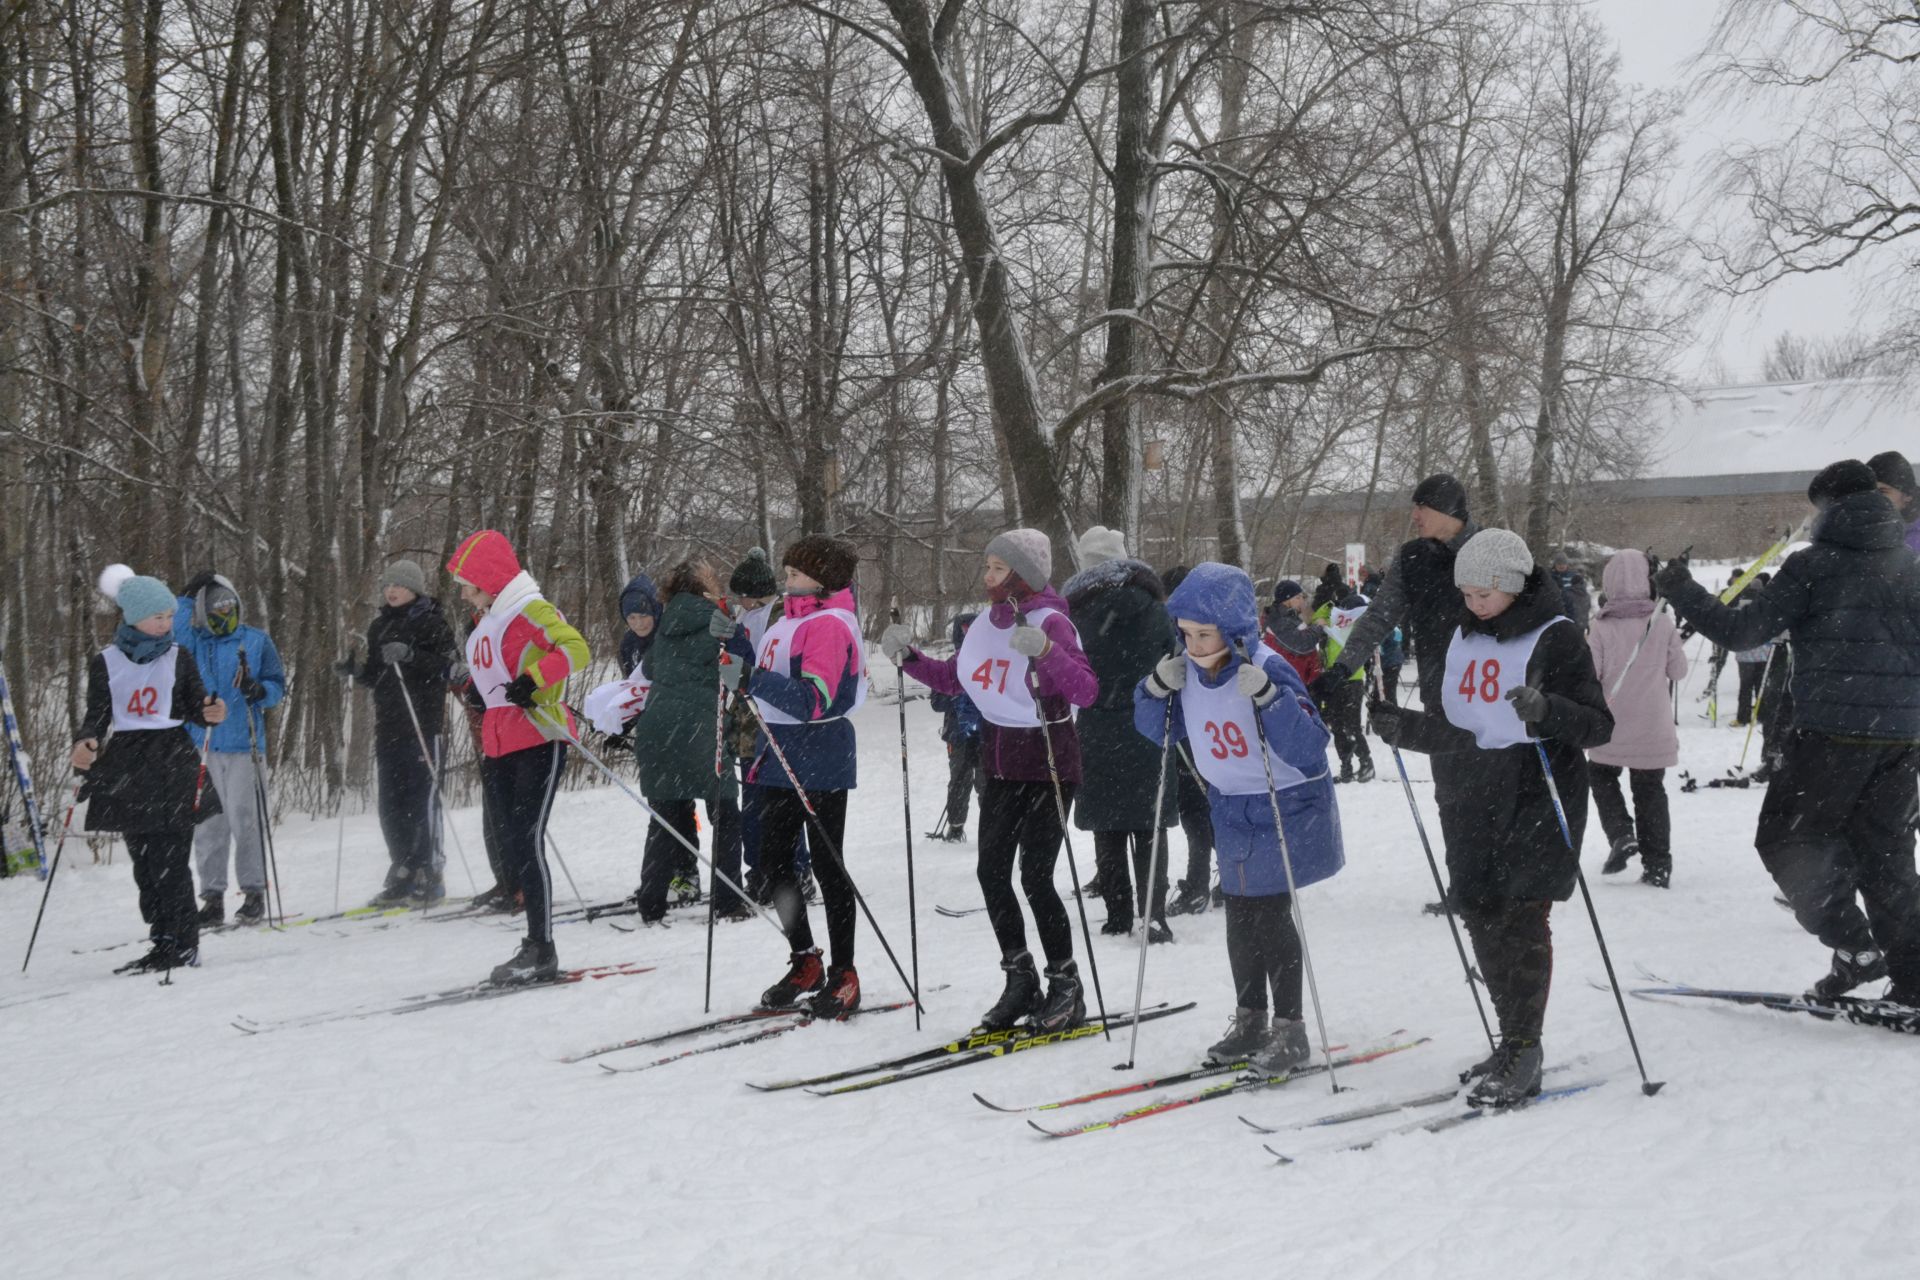 Открытие лыжного сезона 2019/2020 в Мензелинске